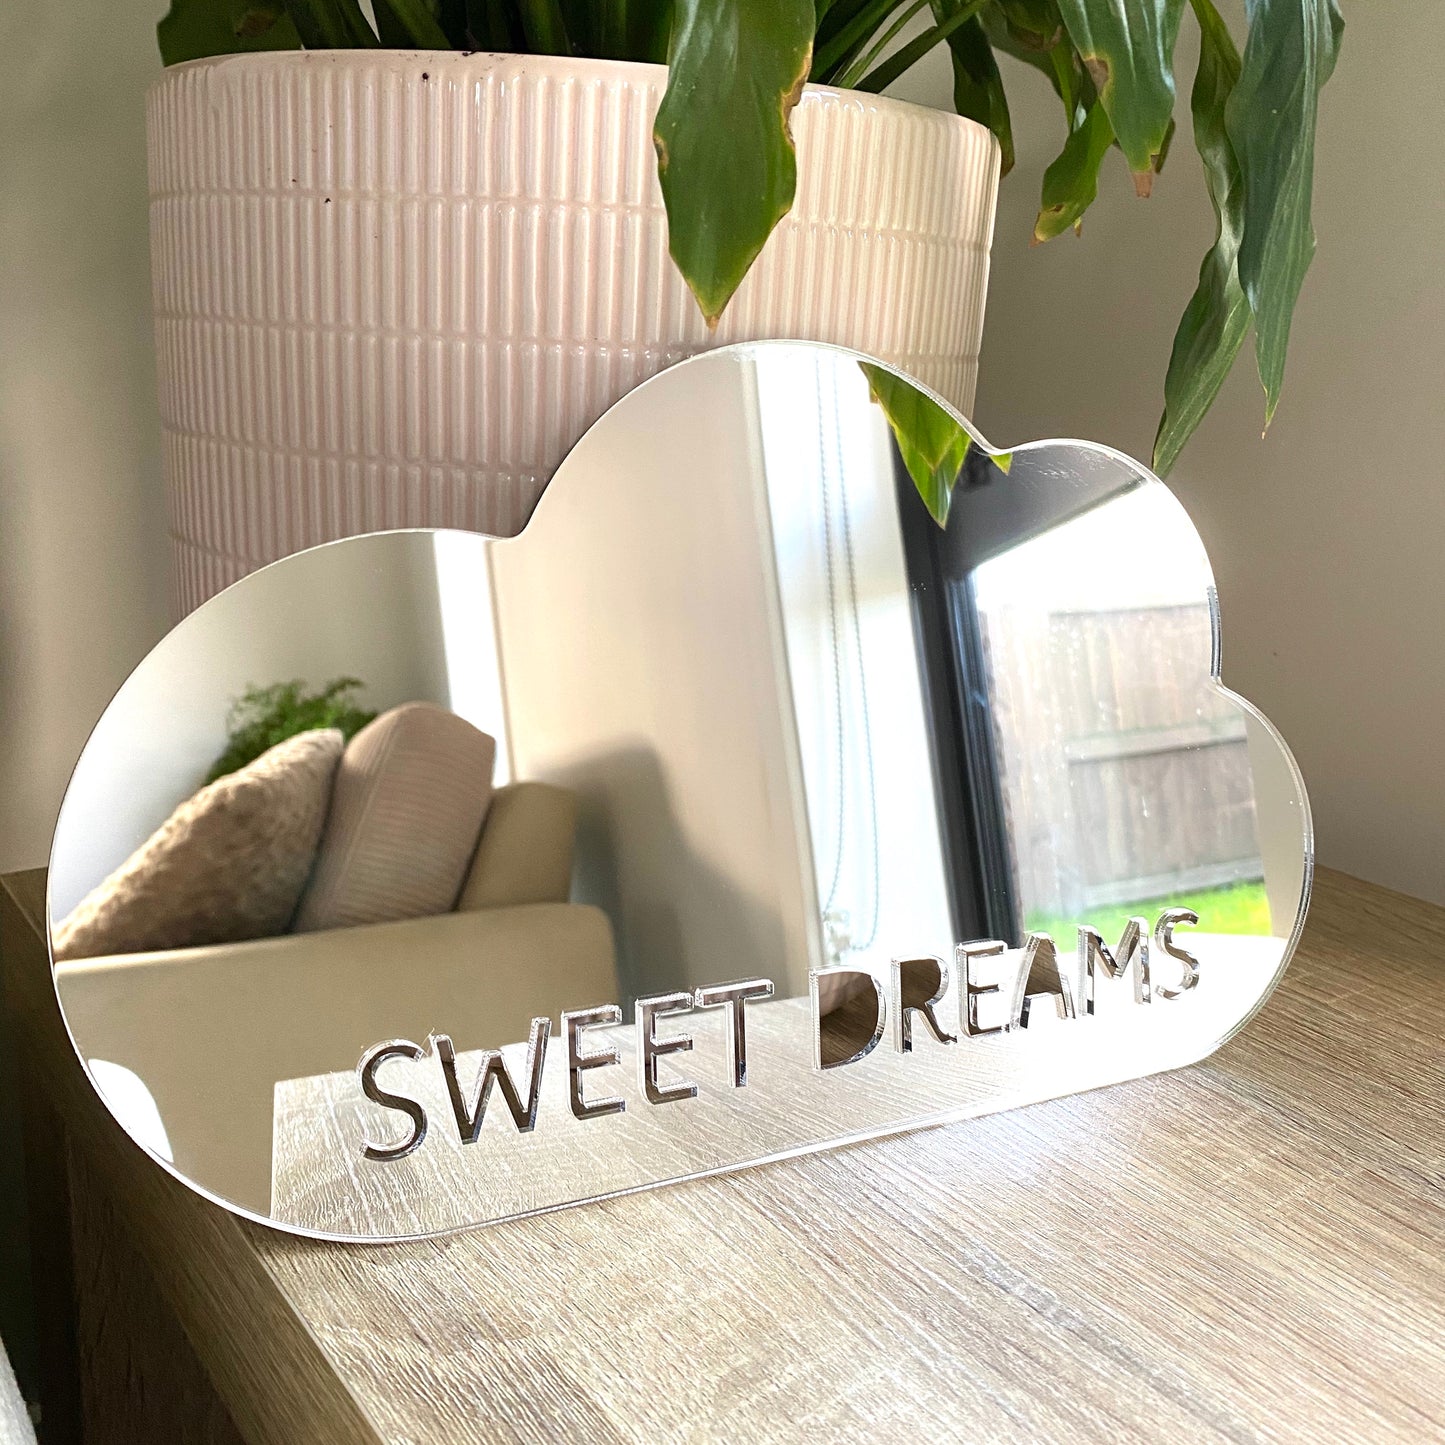 Sweet dreams cloud mirror decor - Younique Collective